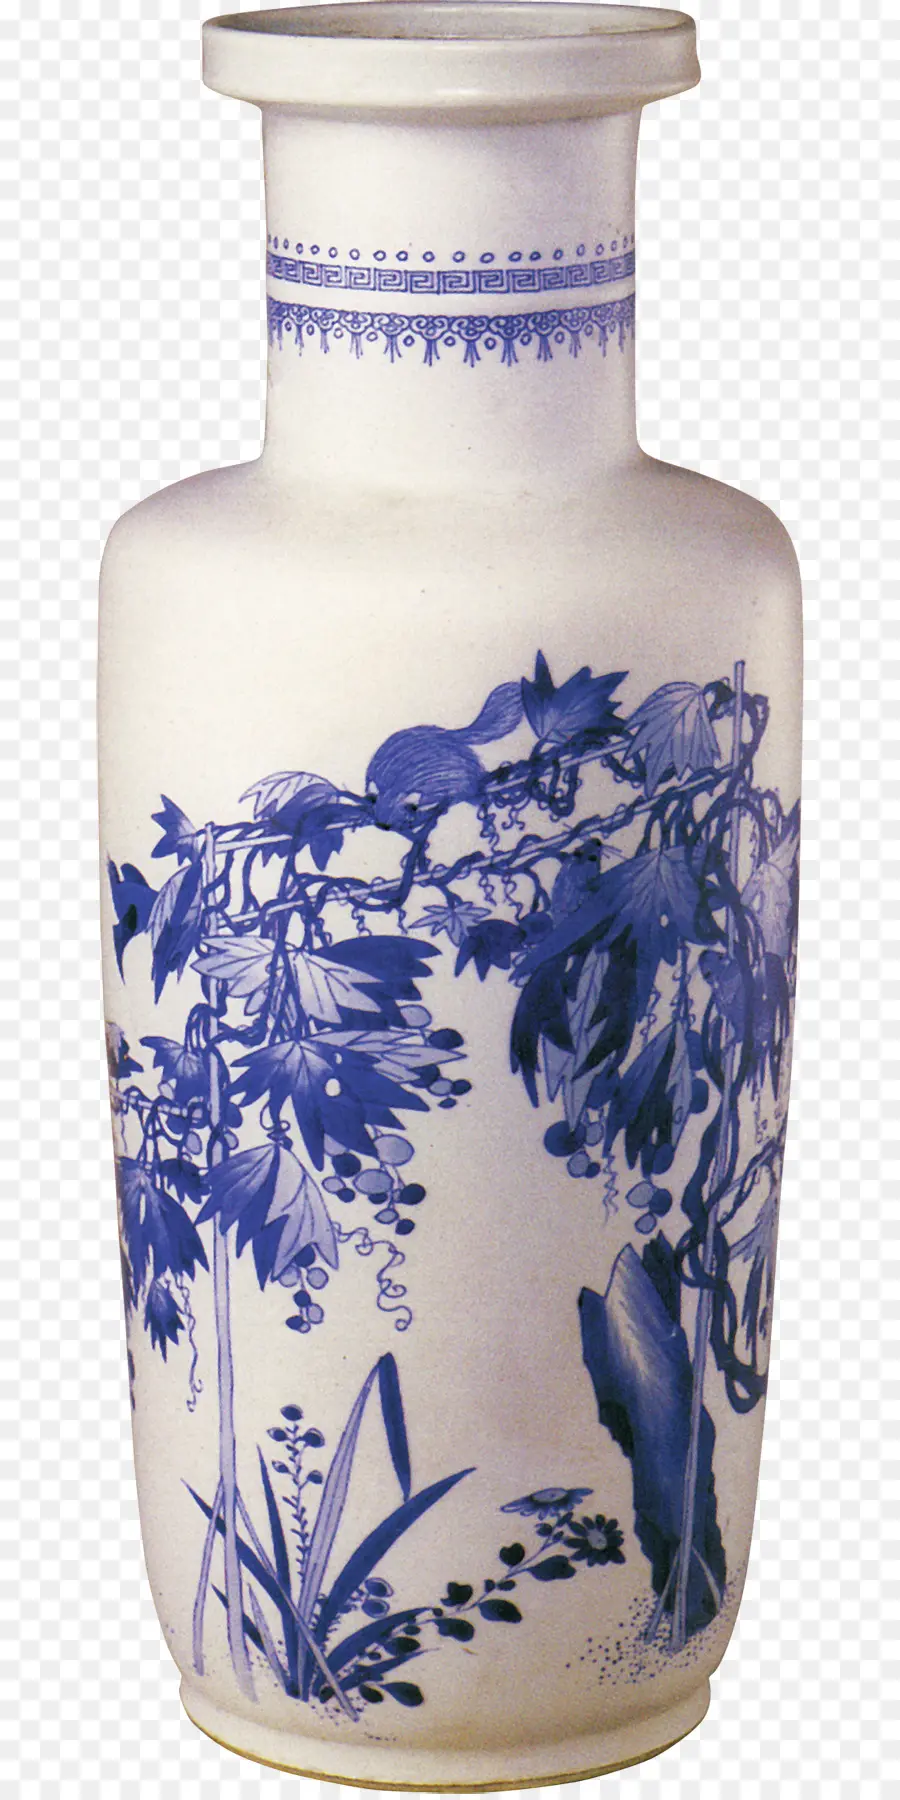 Porcelana，Cerâmica Azul E Branca PNG